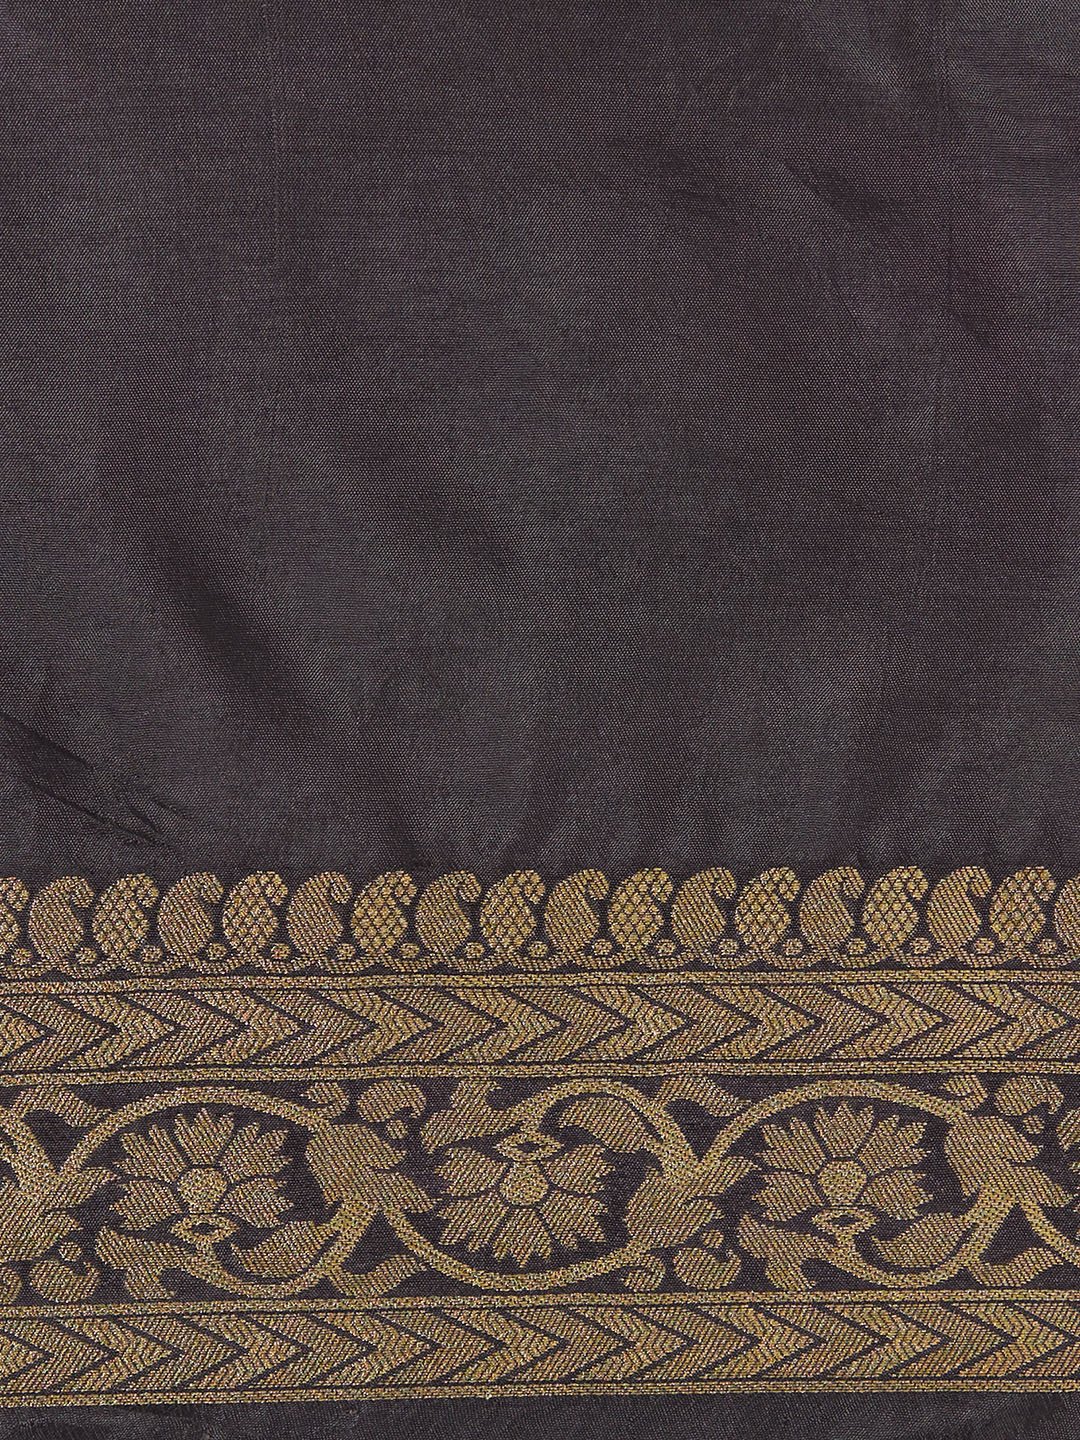 Handloom Cotton Saree In Yellow & Black Color